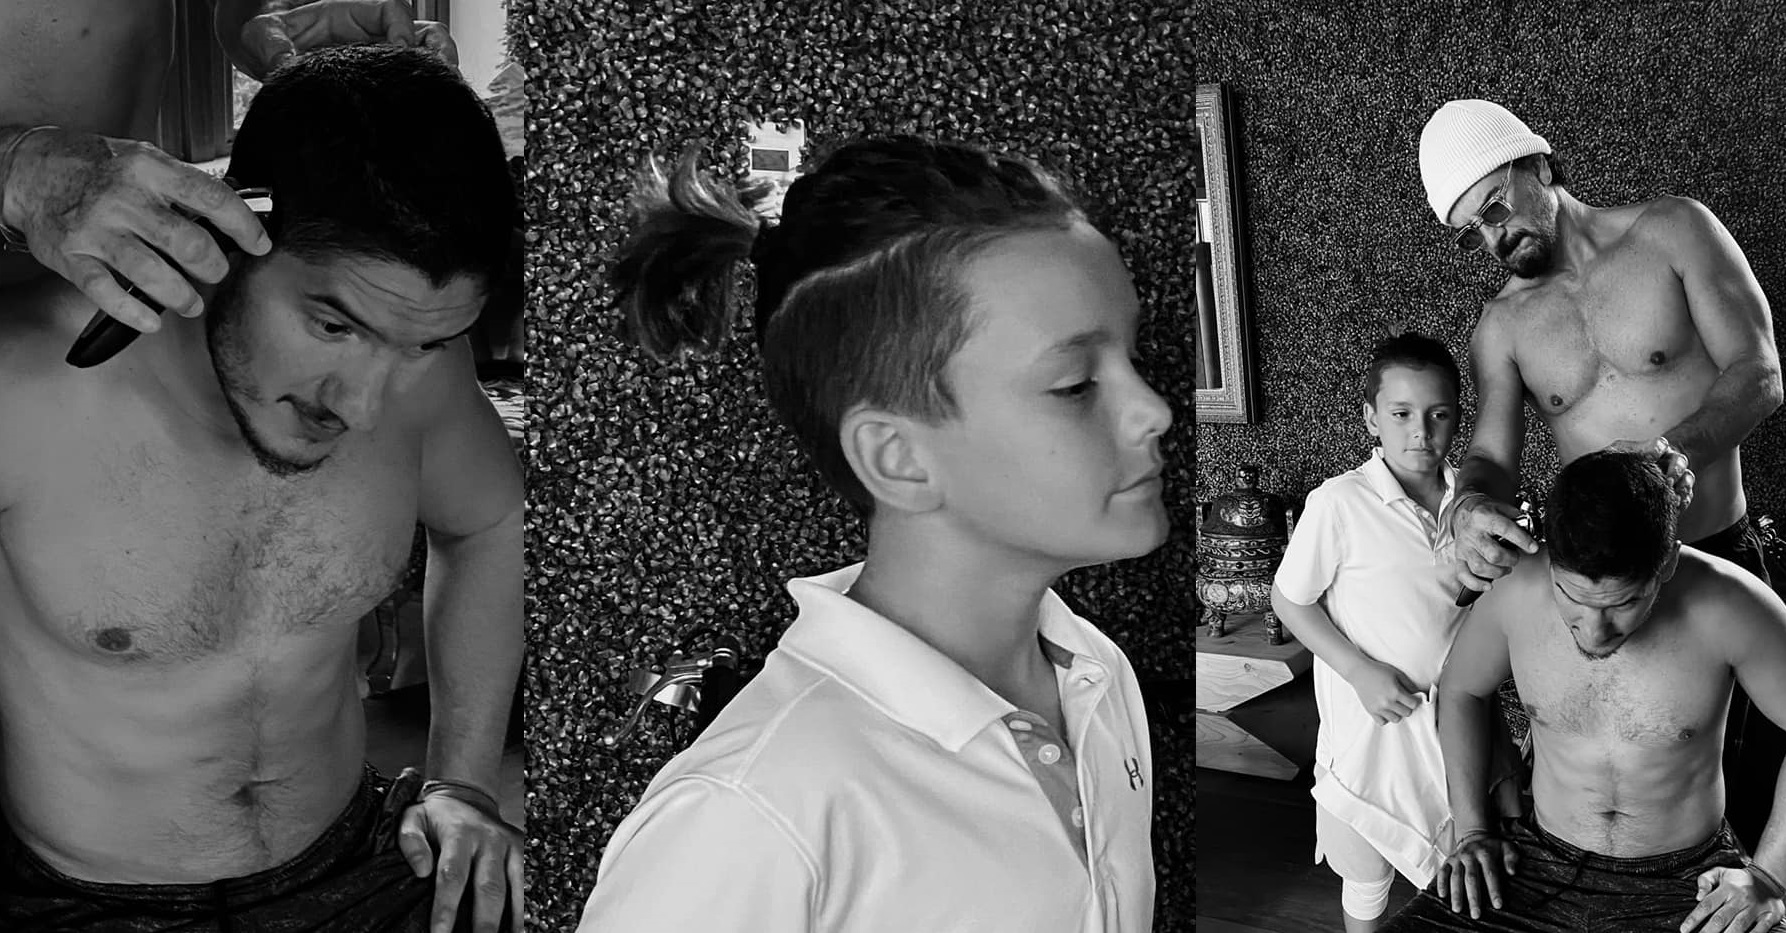 Ricardo Arjona corta el cabello de sus hijos durante el confinamiento provocado por la pandemia del nuevo coronavirus. (Foto Prensa Libre: Facebook)